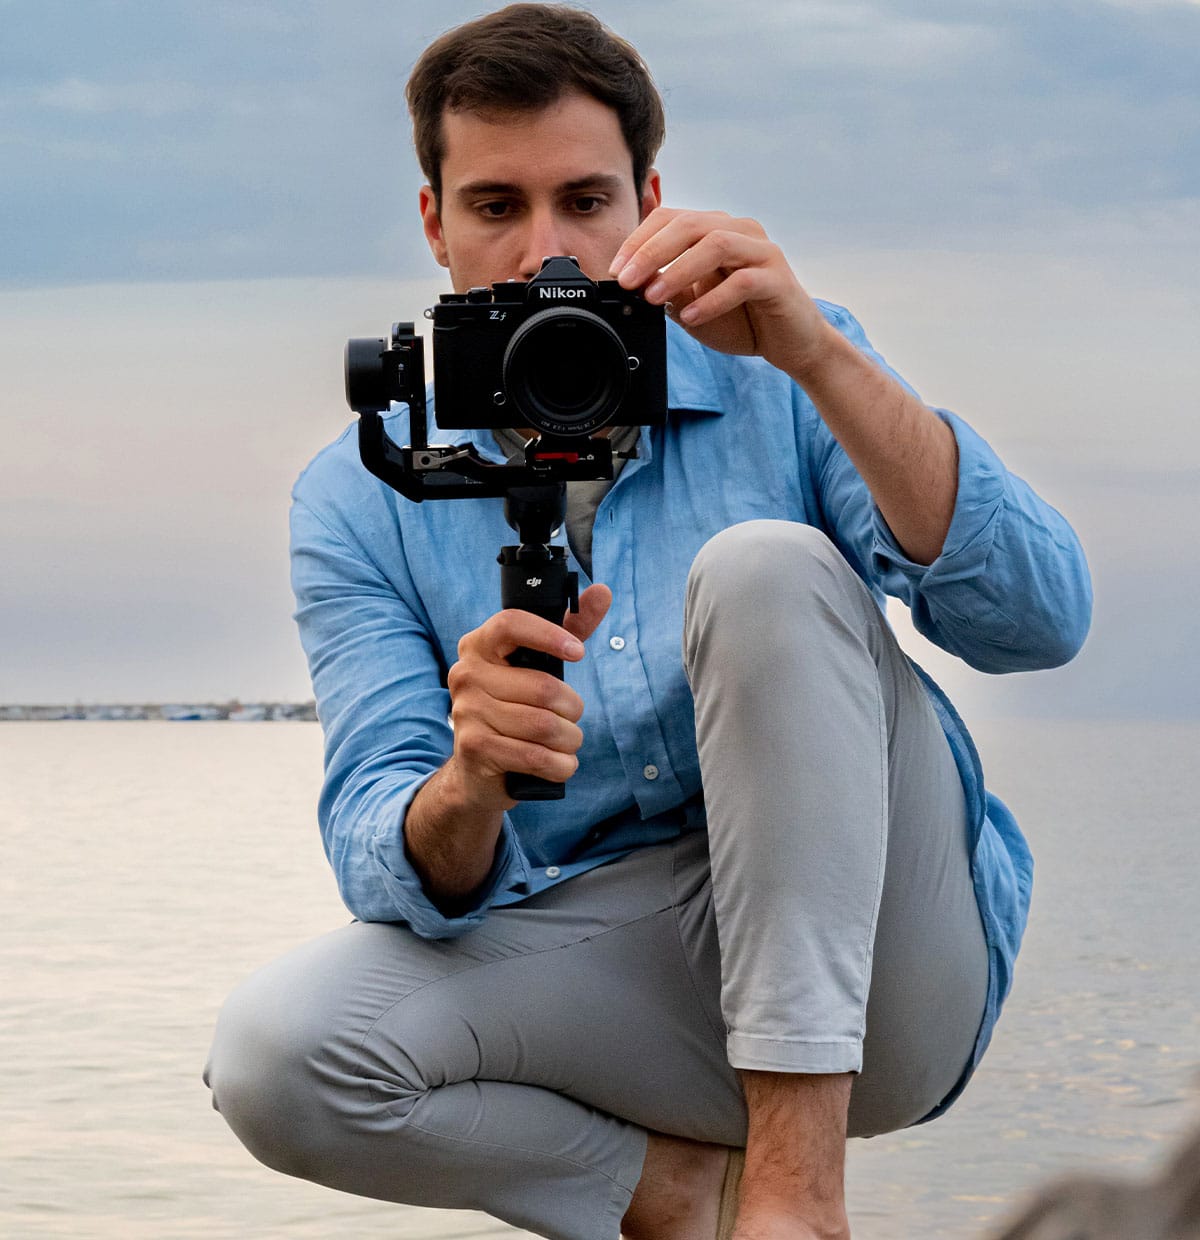 Photo of a man on a beach with a Z f camera on a gimbal